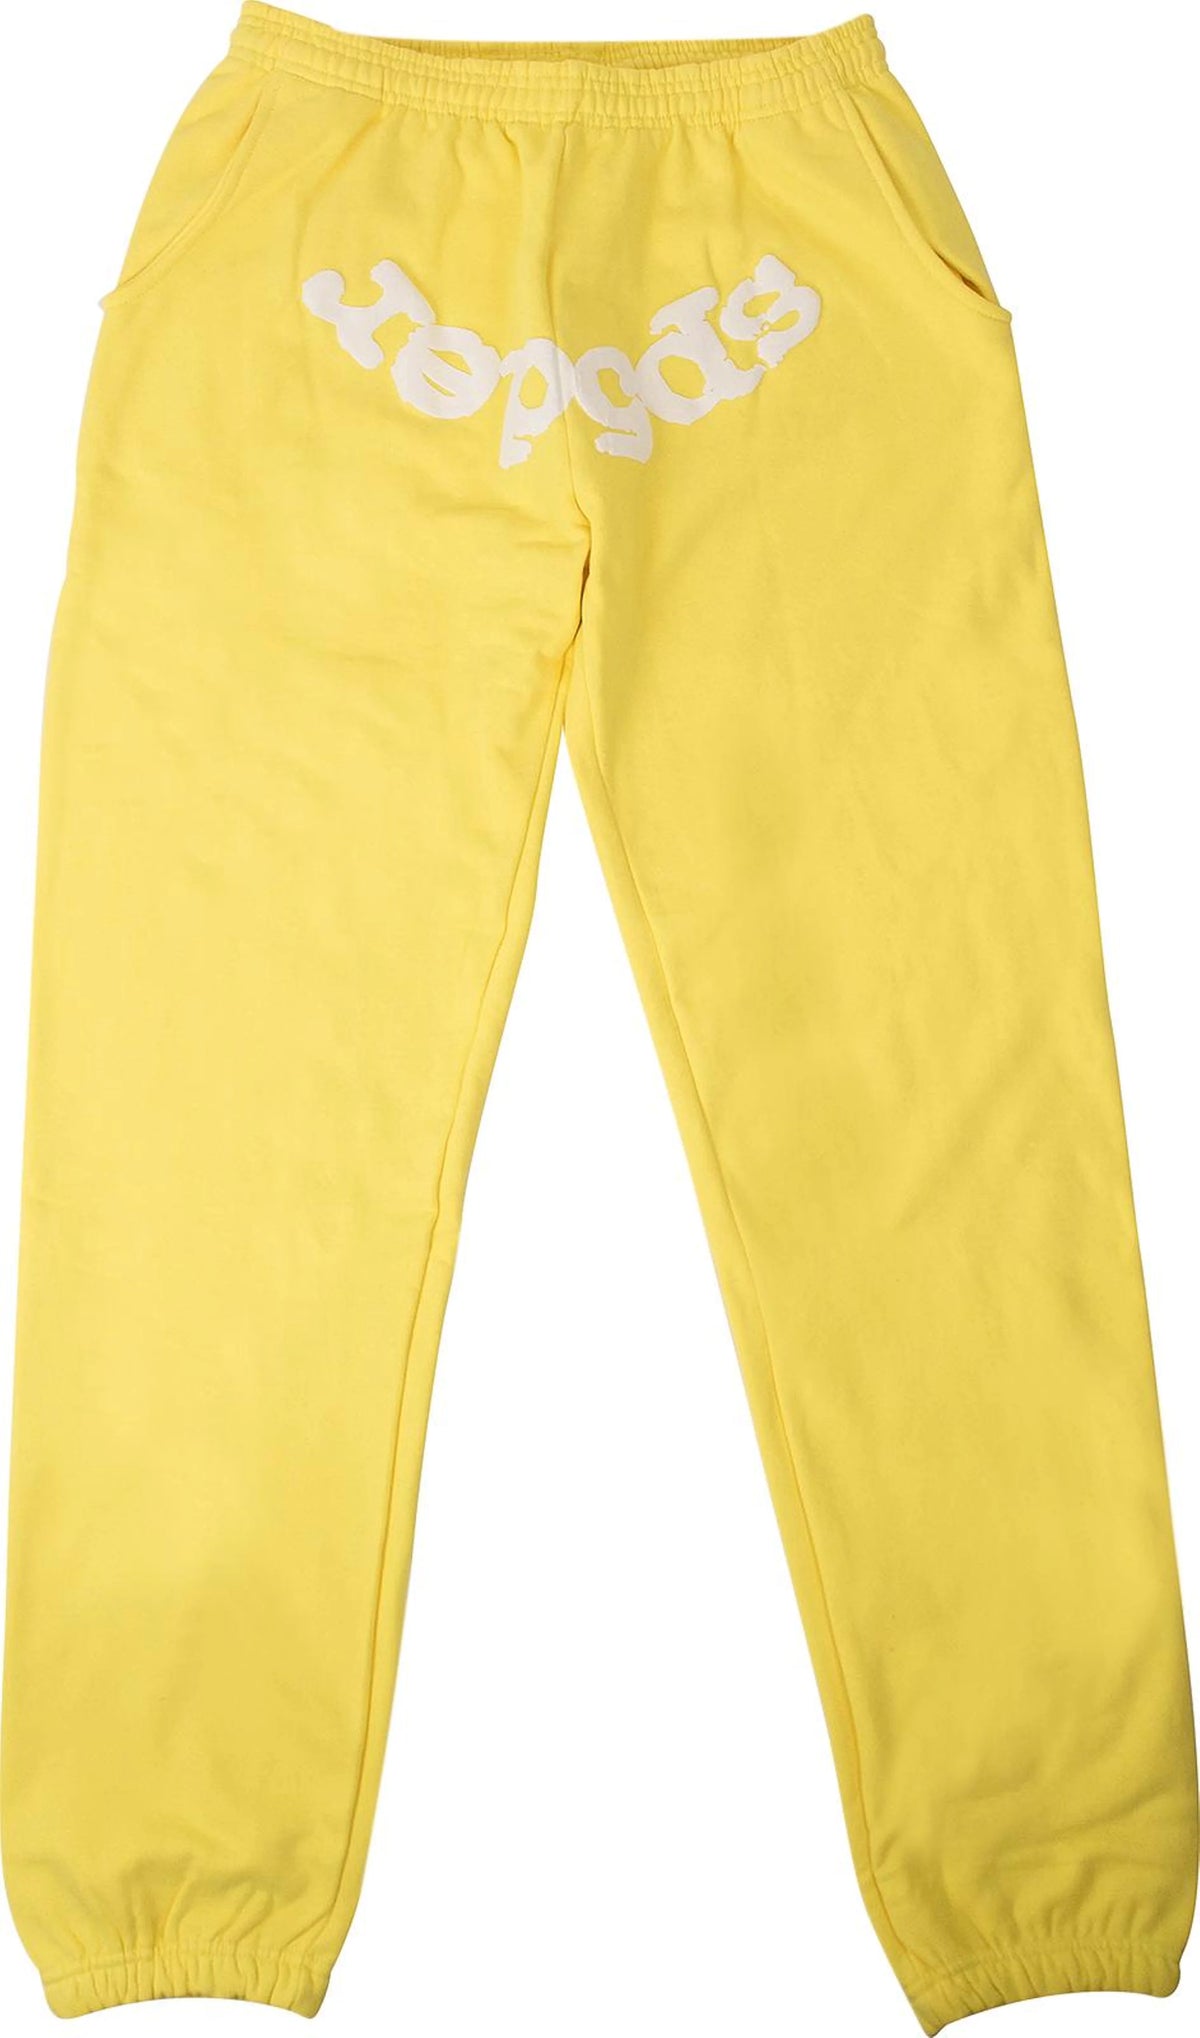 Sp5der Websuit Sweatpant Yellow